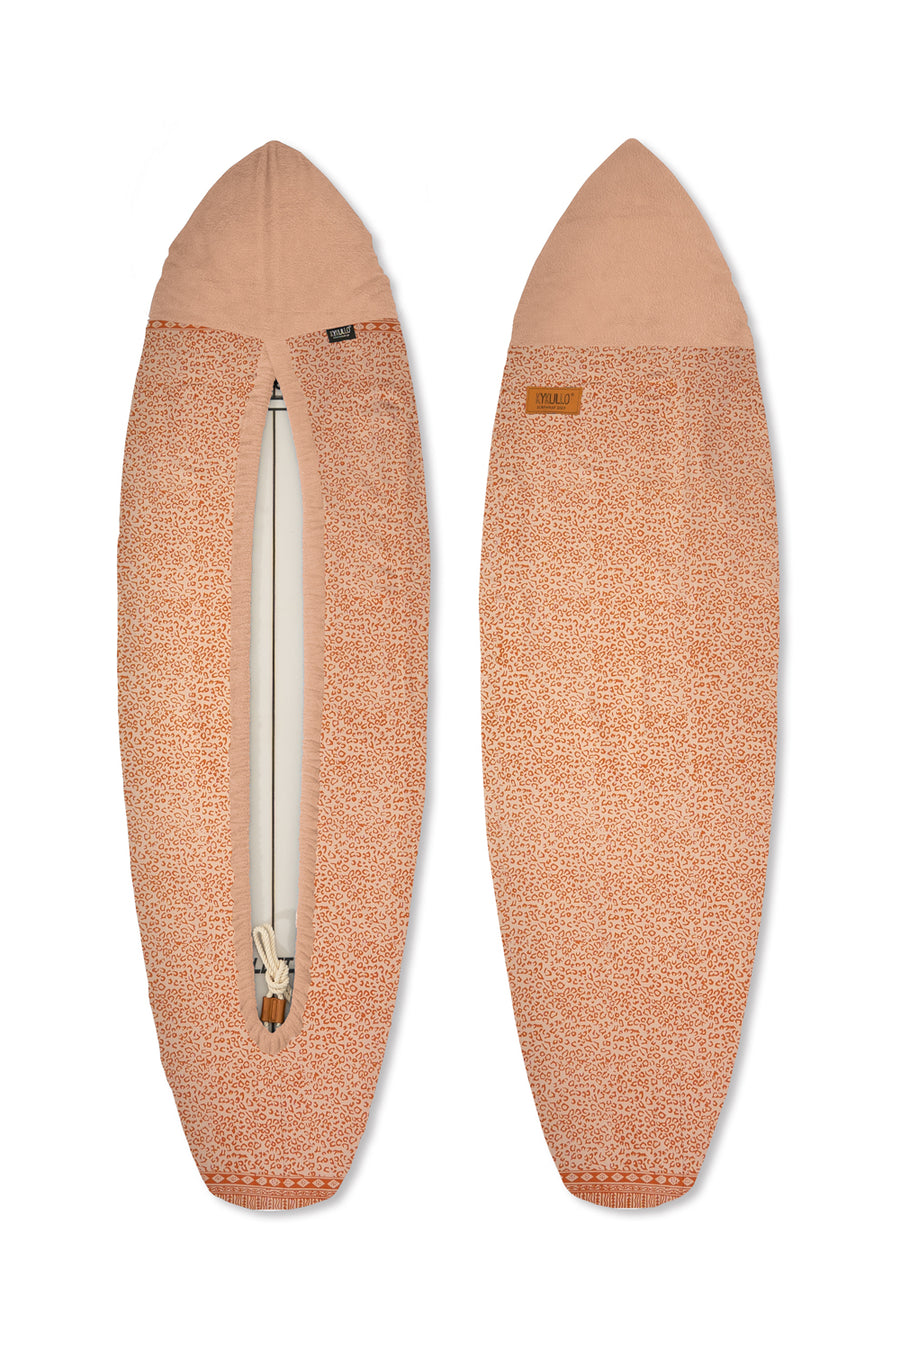 SURFWRAP 6'4 -LIGHT ORANGE (RETAIL)